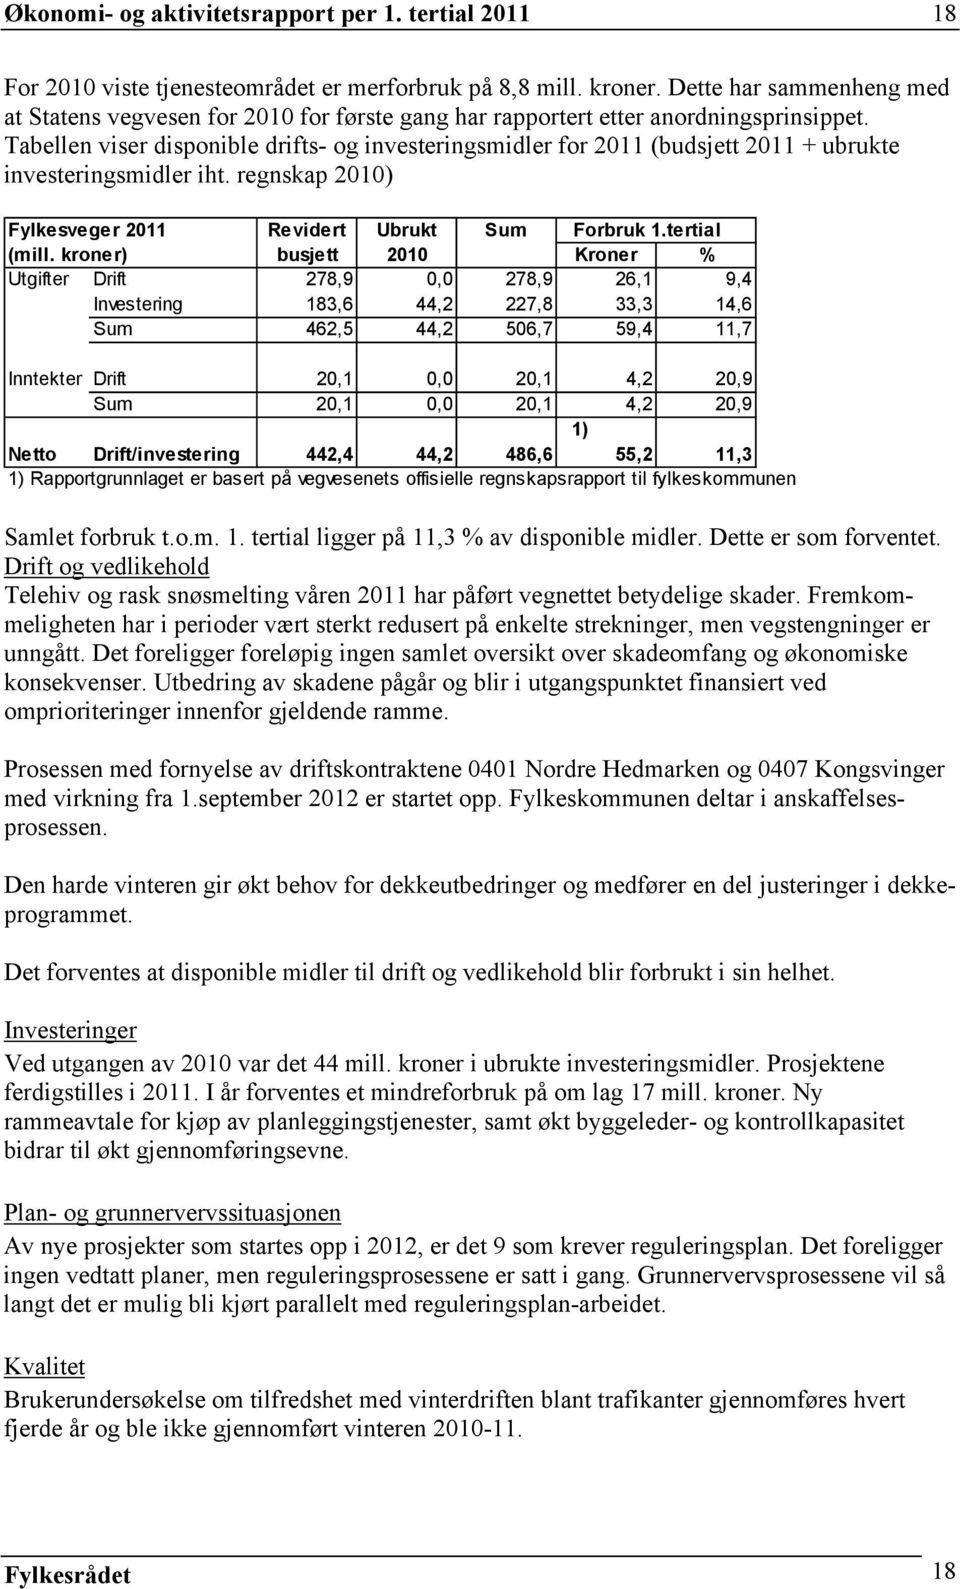 Tabellen viser disponible drifts- og investeringsmidler for 2011 (budsjett 2011 + ubrukte investeringsmidler iht. regnskap 2010) Fylkesveger 2011 Revidert Ubrukt Sum Forbruk 1.tertial (mill.